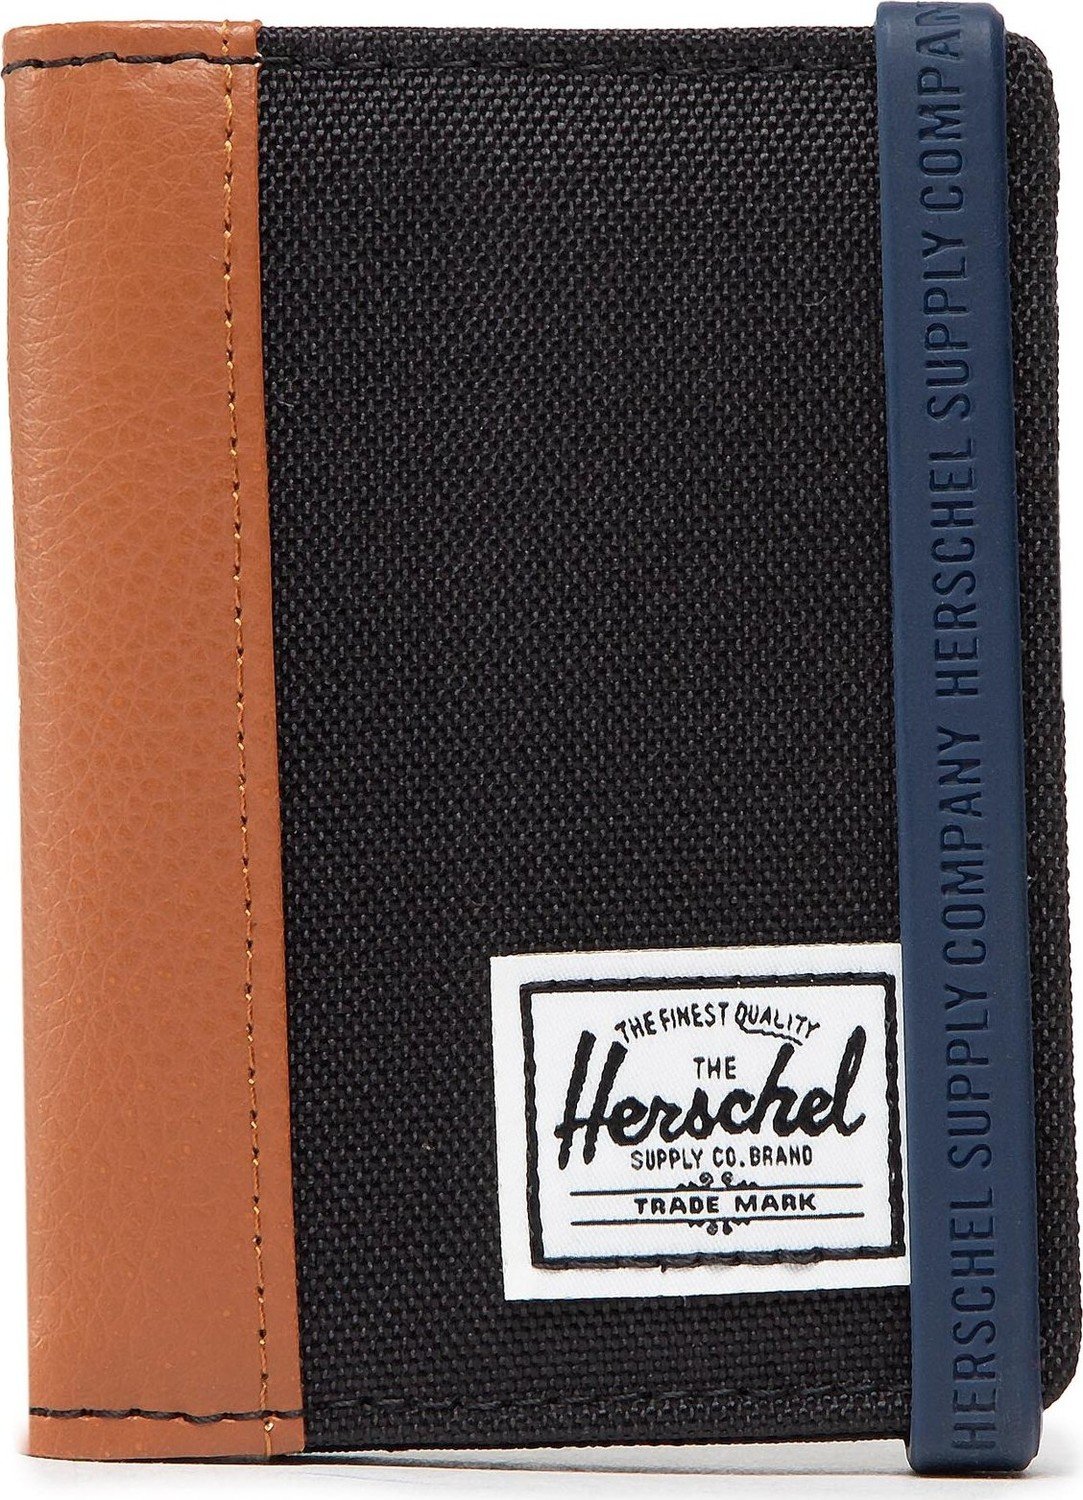 Pouzdro na kreditní karty Herschel Gordon 11149-00001 Black